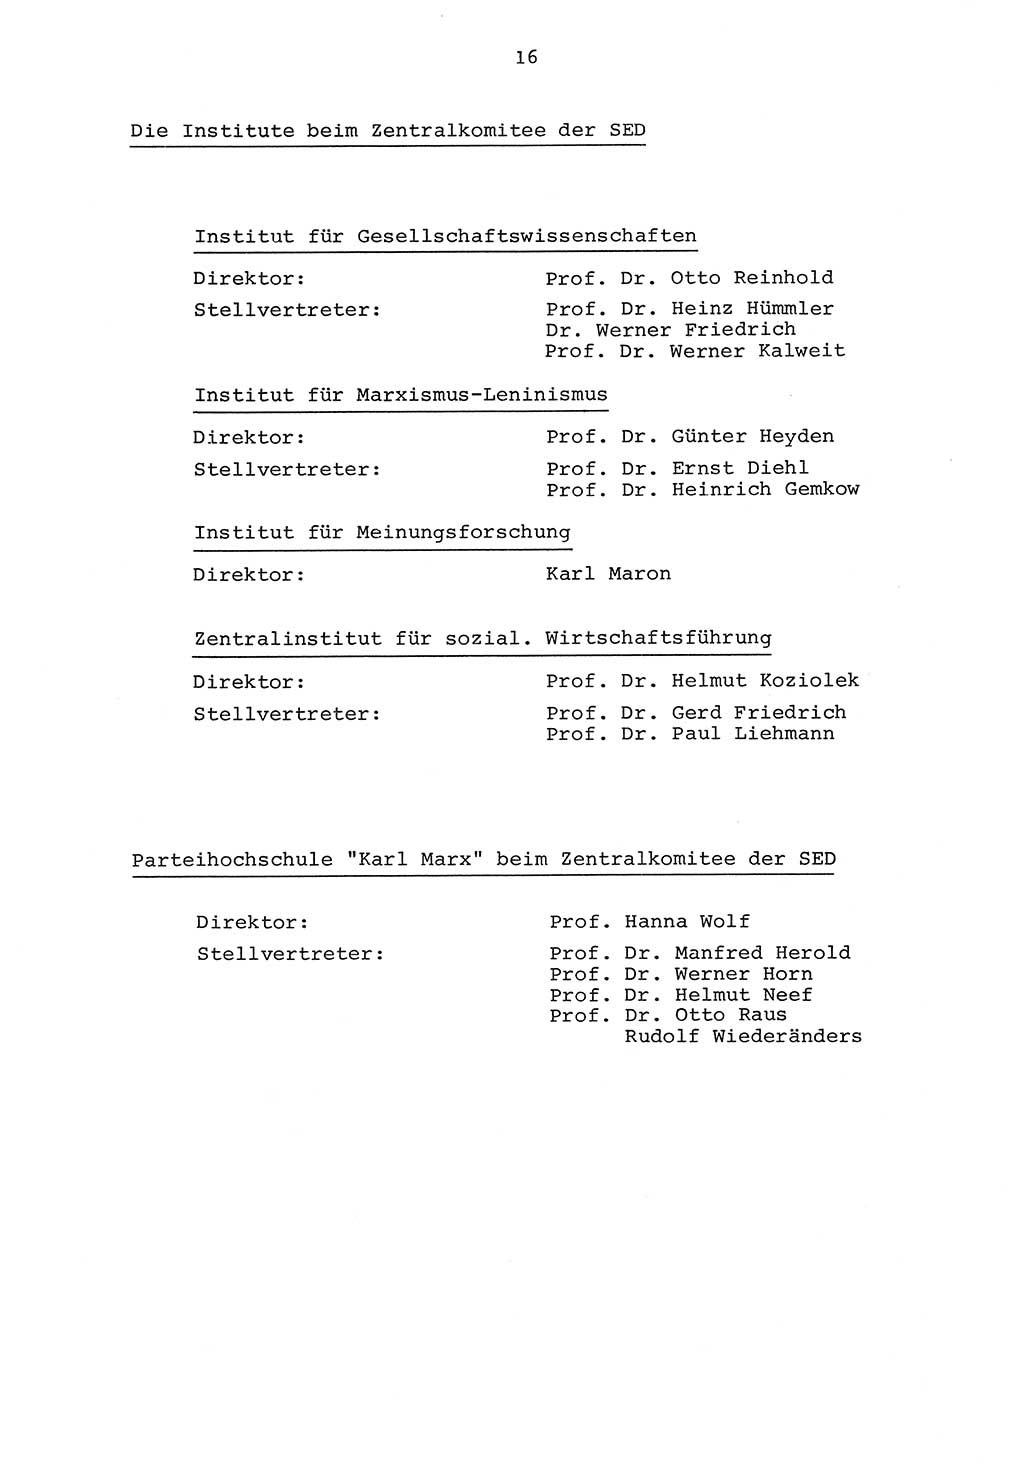 Parteiapparat der Deutschen Demokratischen Republik (DDR) 1970, Seite 16 (Parteiapp. DDR 1970, S. 16)